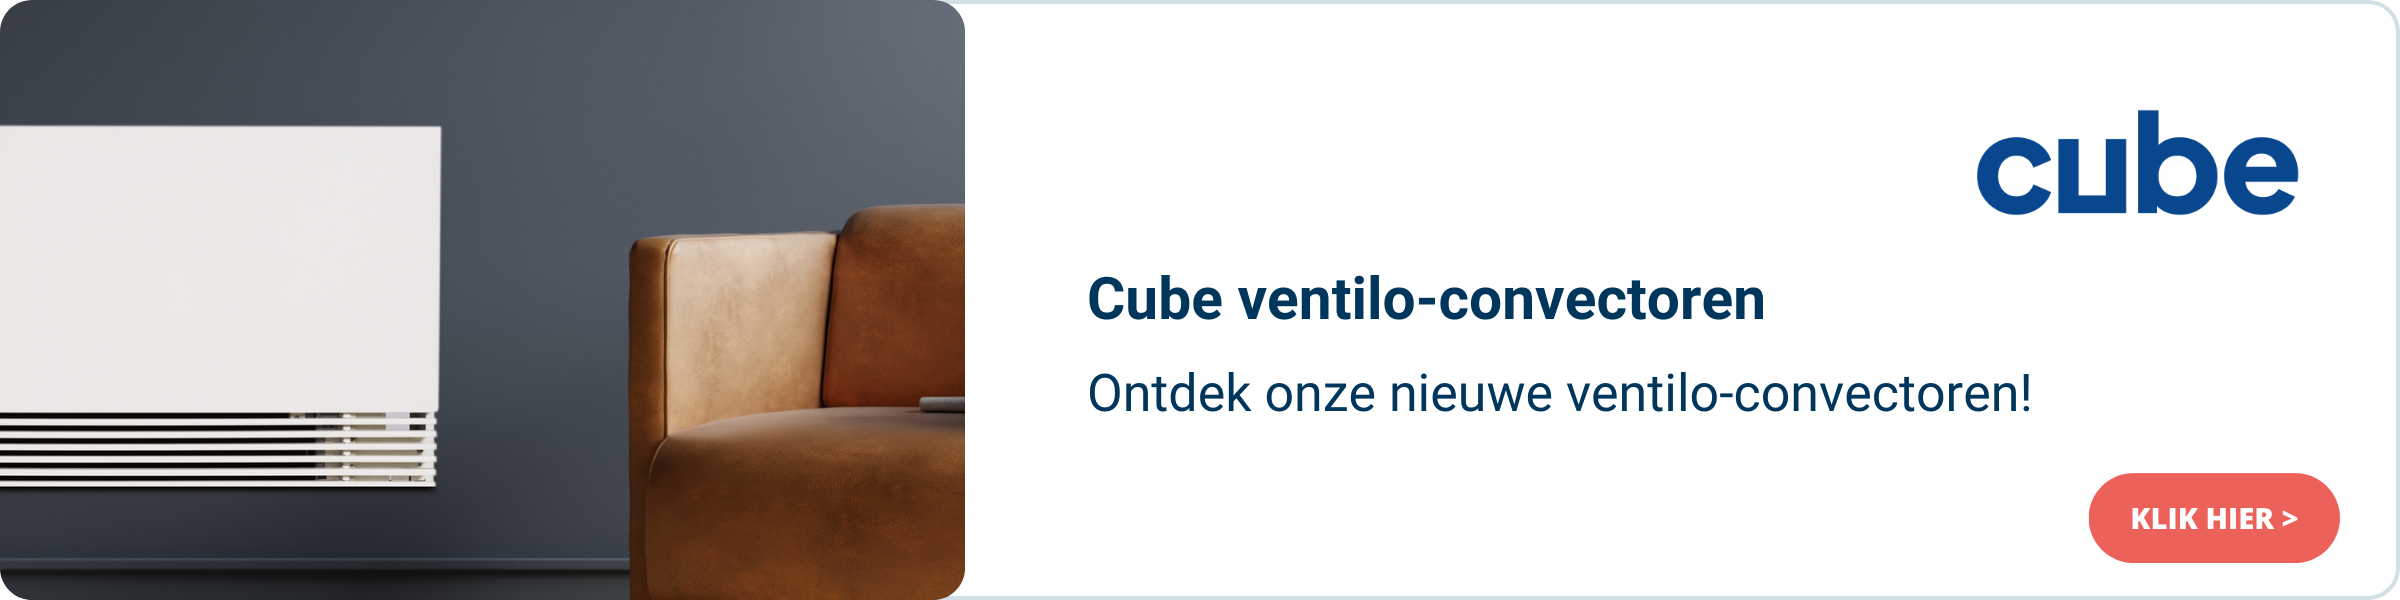 CUBE VENTILO NL.png